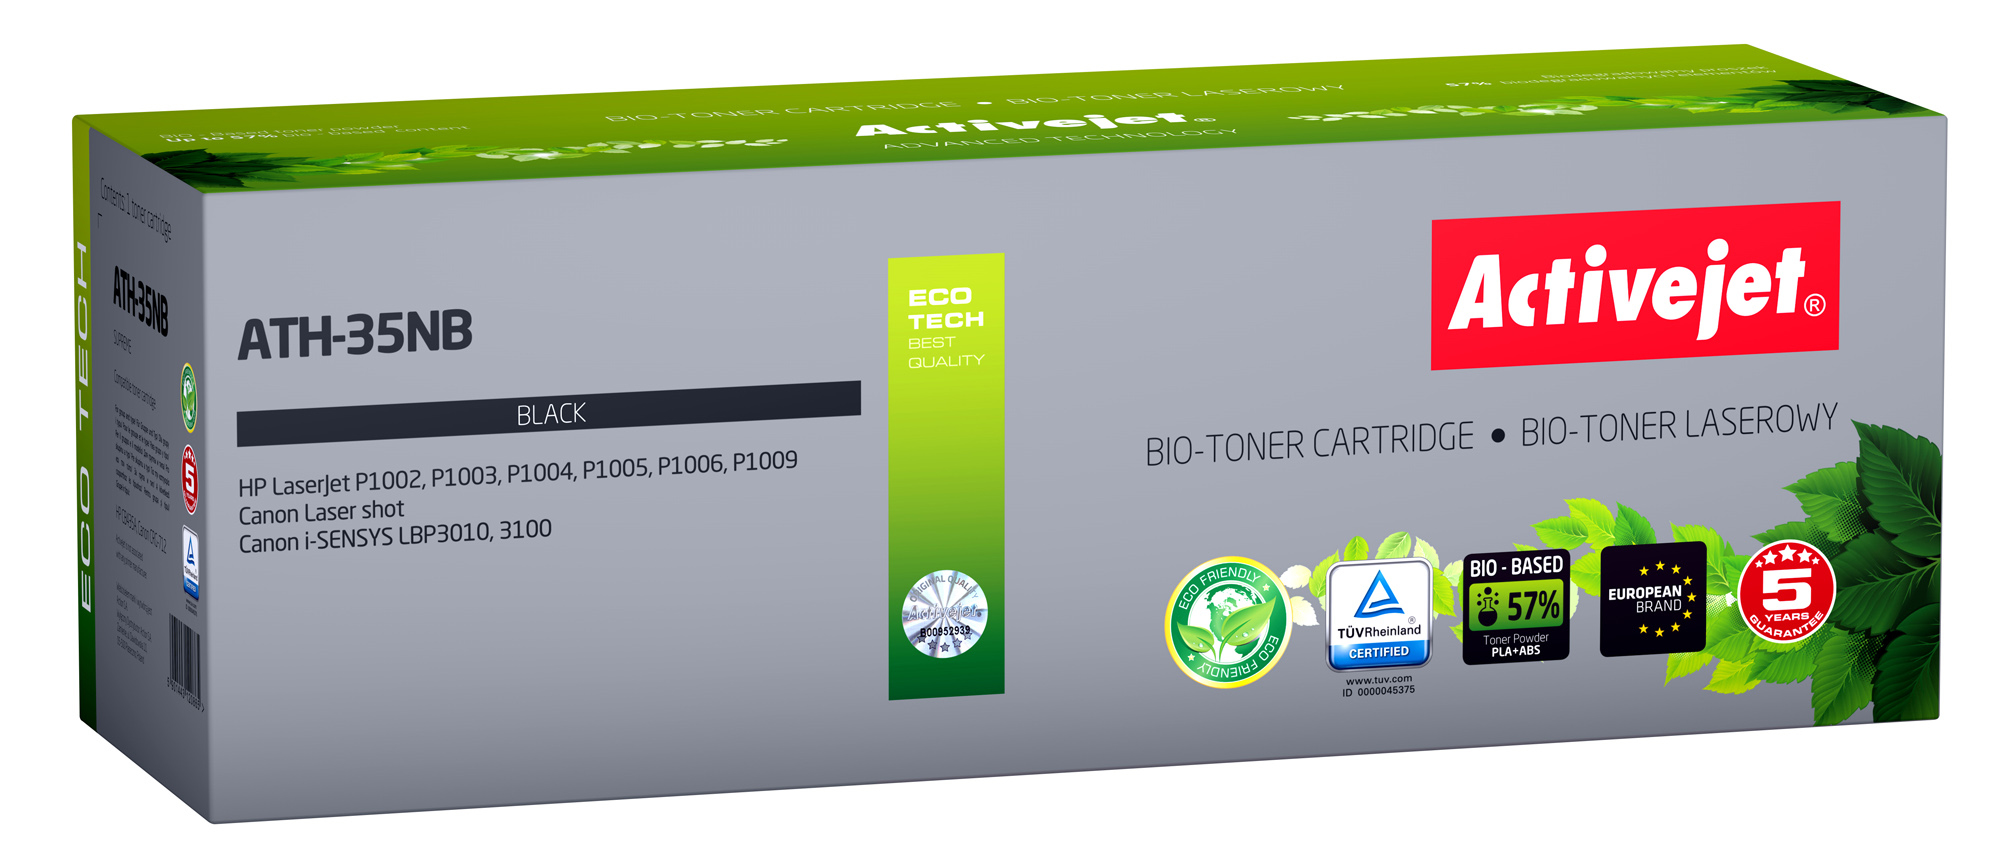 BIO Toner Activejet ATH-35NB do drukarek HP, Canon, Zamiennik HP 35A CB435A, Canon CRG-712;  Supreme;  1800 stron;  czarny. ECO Toner.